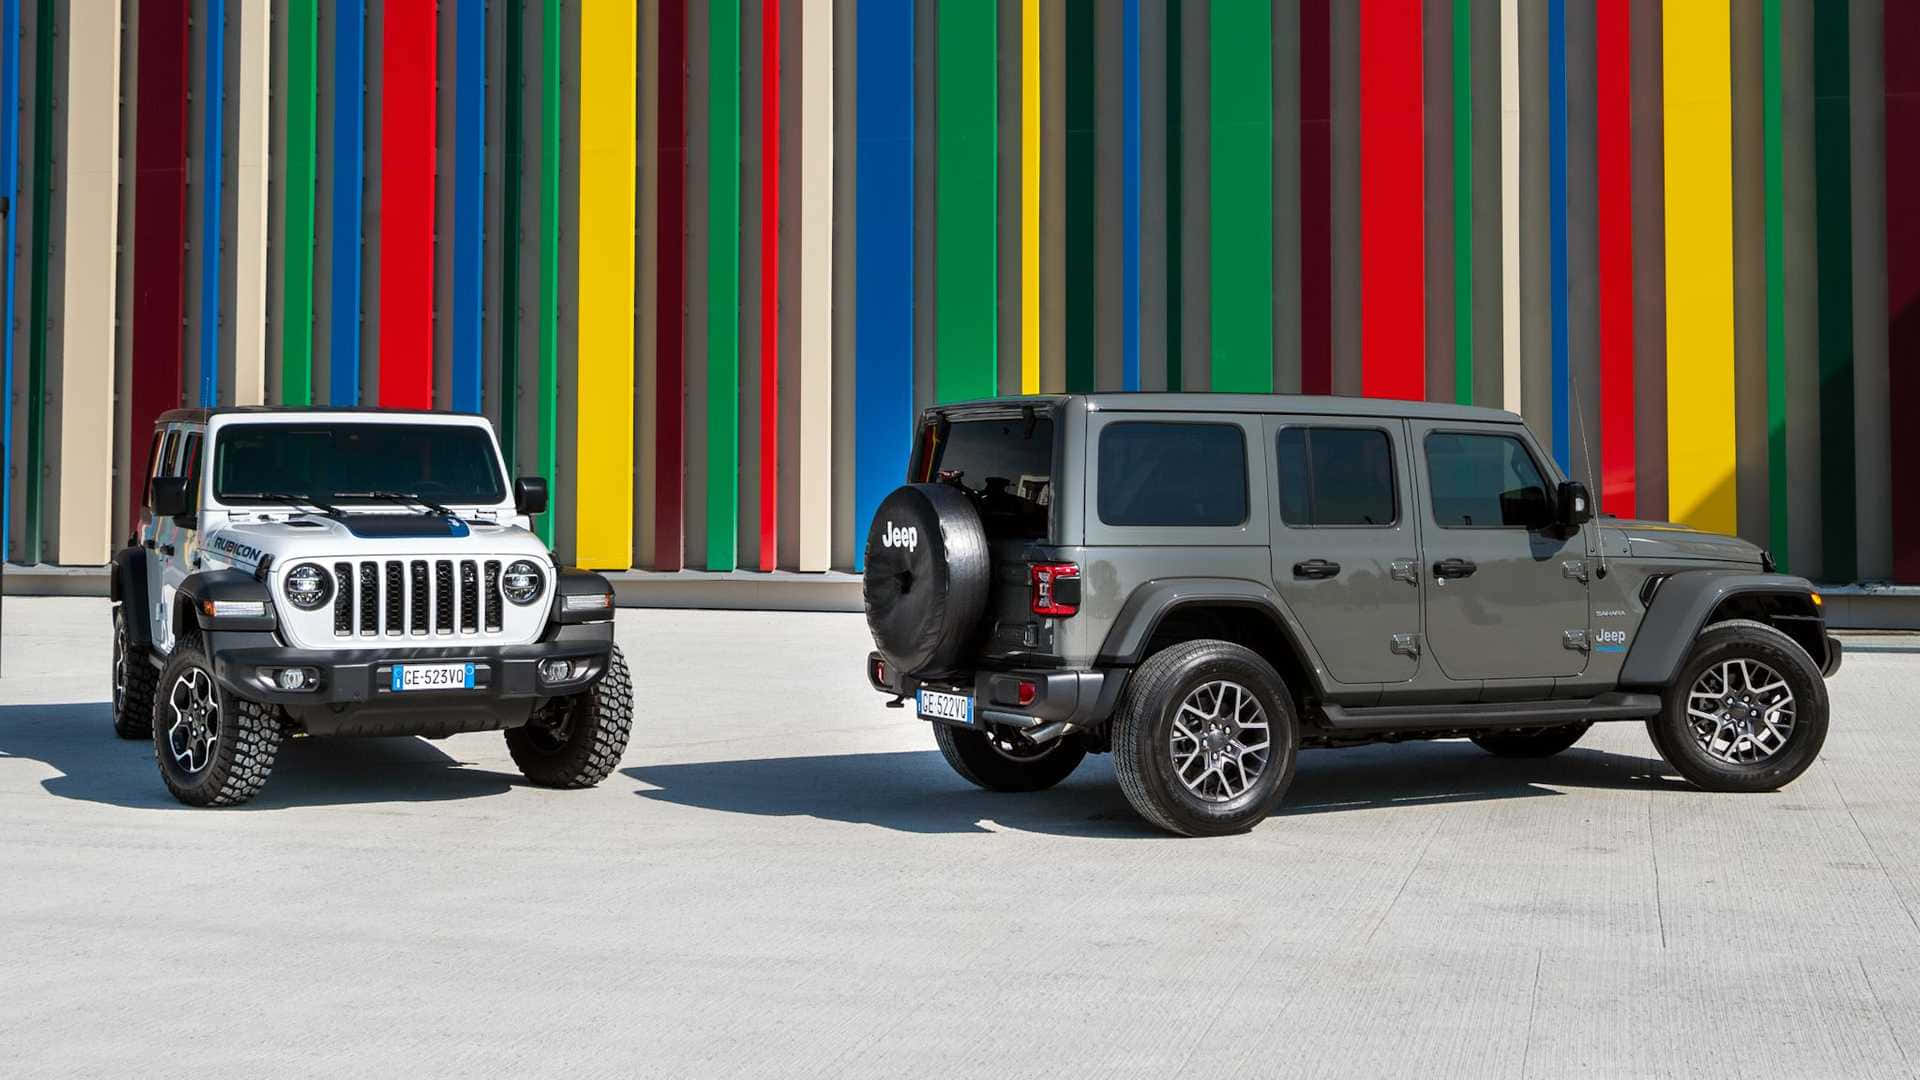 Udforsk det udendørs med en Jeep Wallpaper!